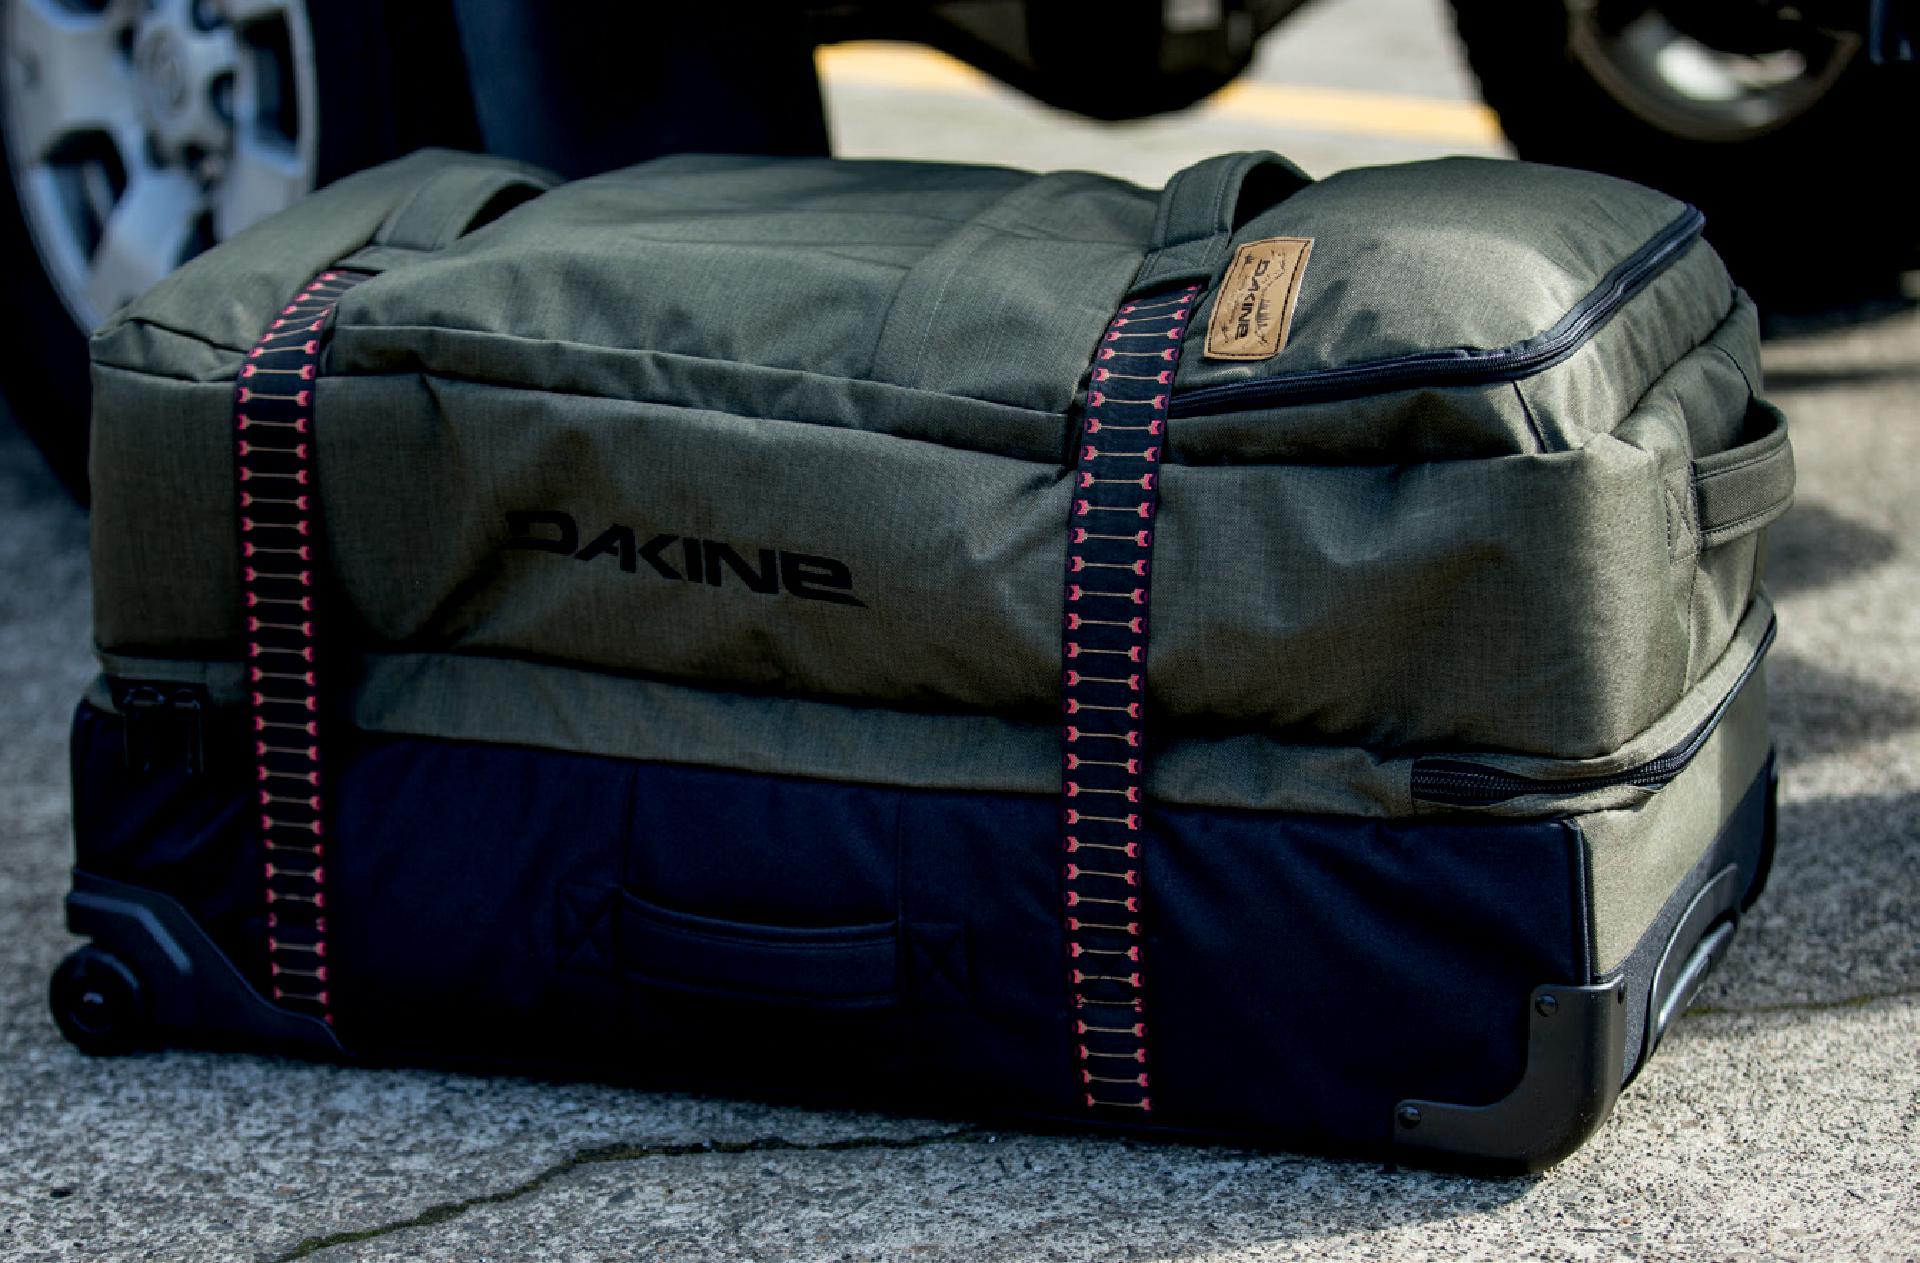 Die Gepäckstücke von Dakine bestechen durch Style & Funktion.